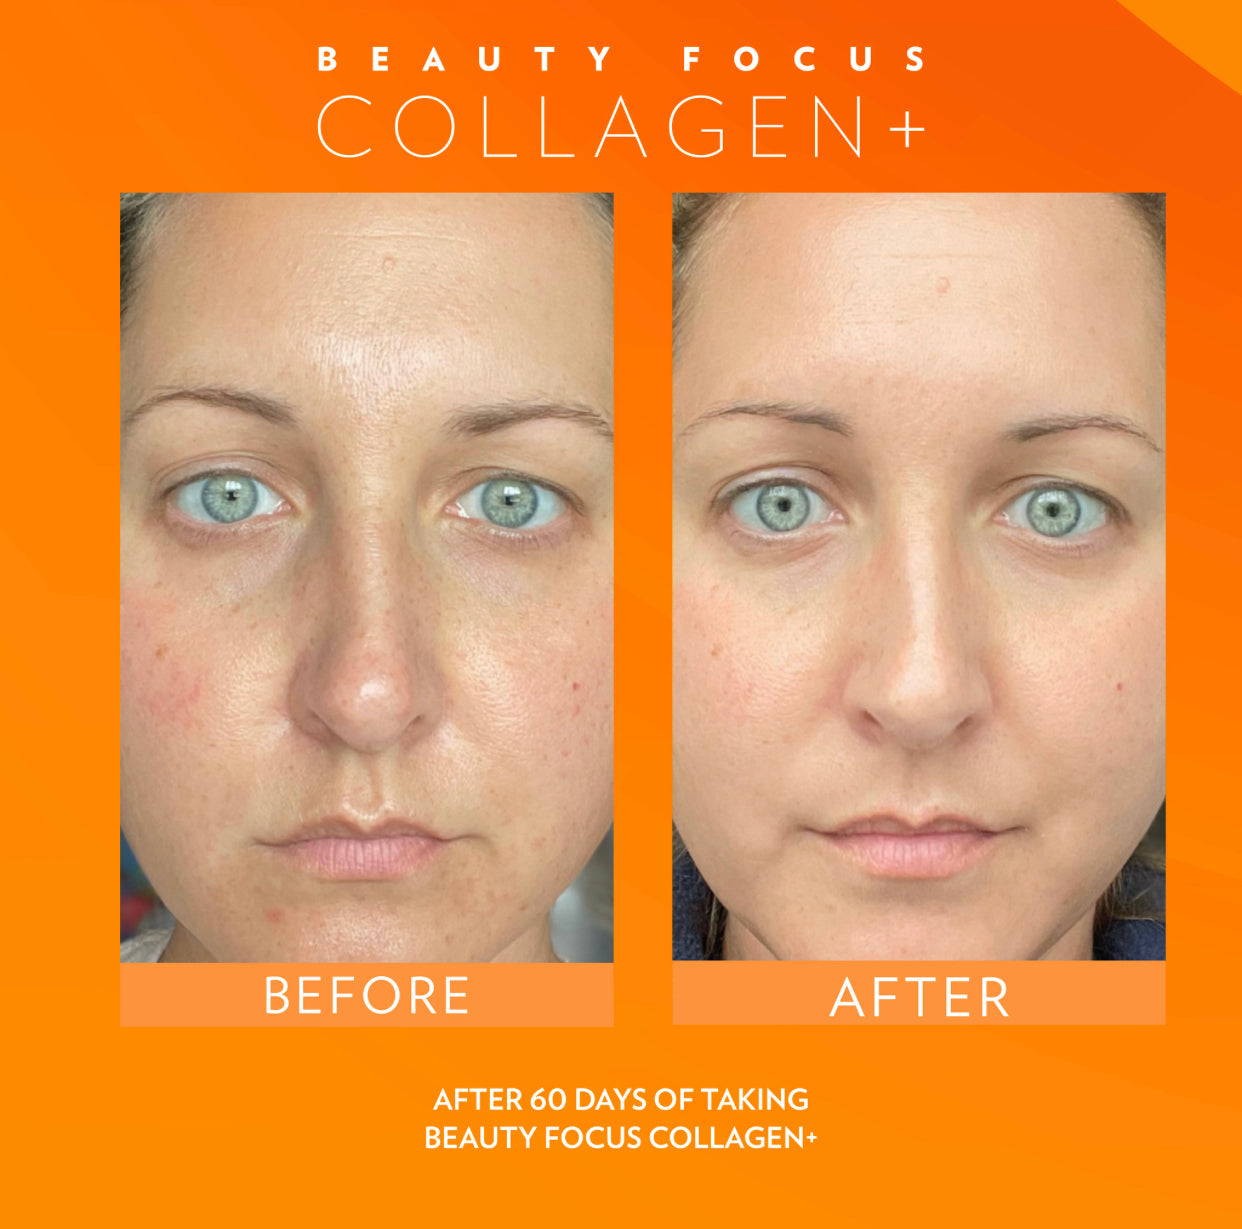 Beauty Focus Collagen - Peach